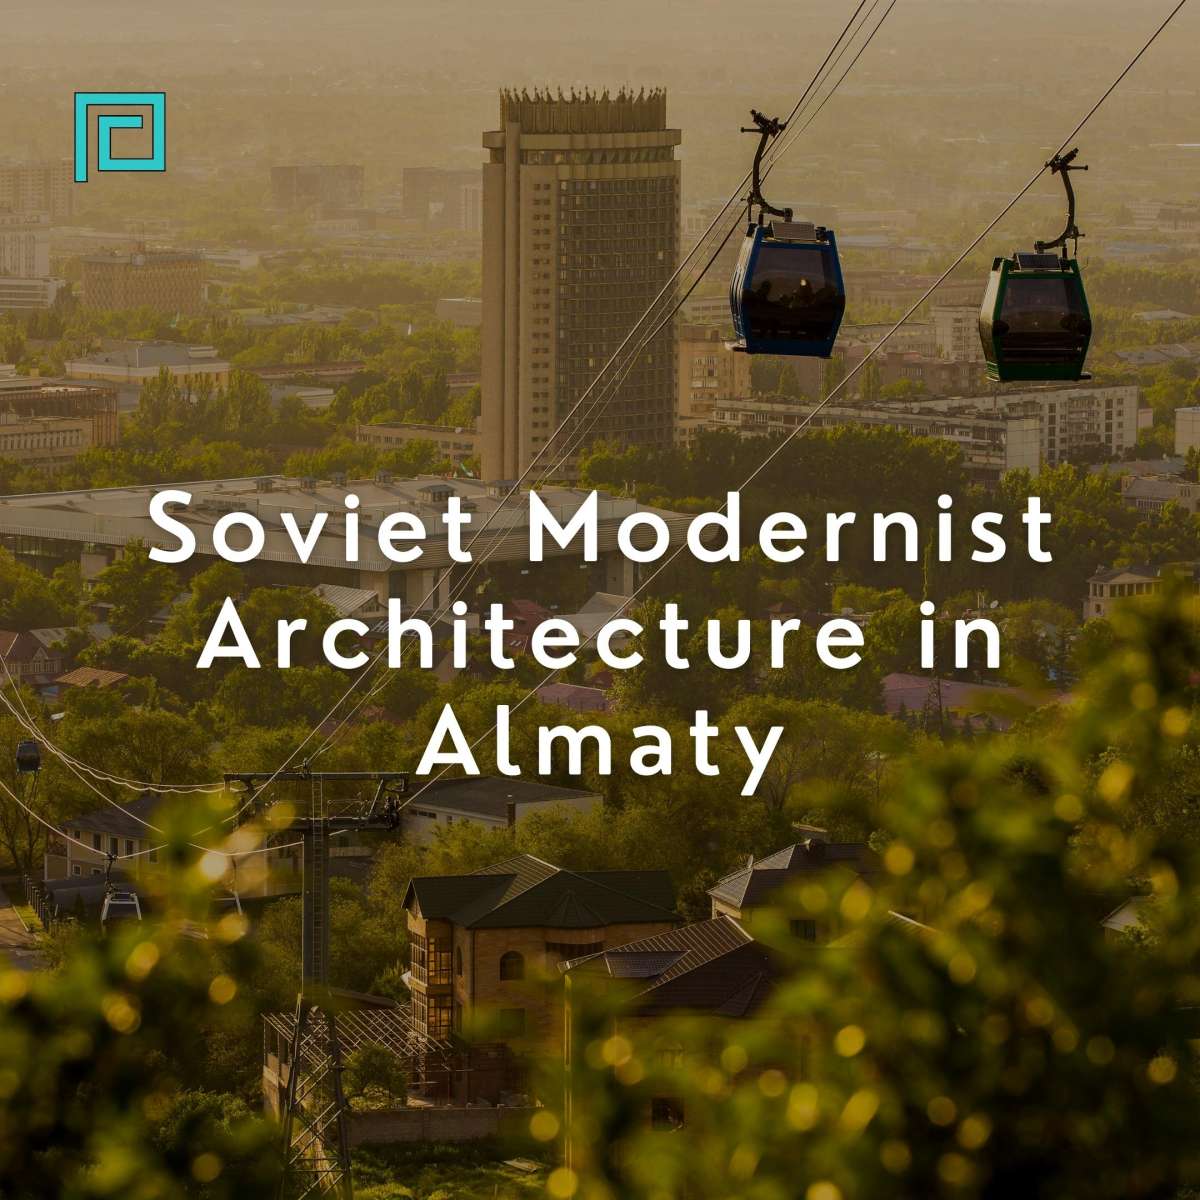 Soviet Modernist Architecture in Almaty